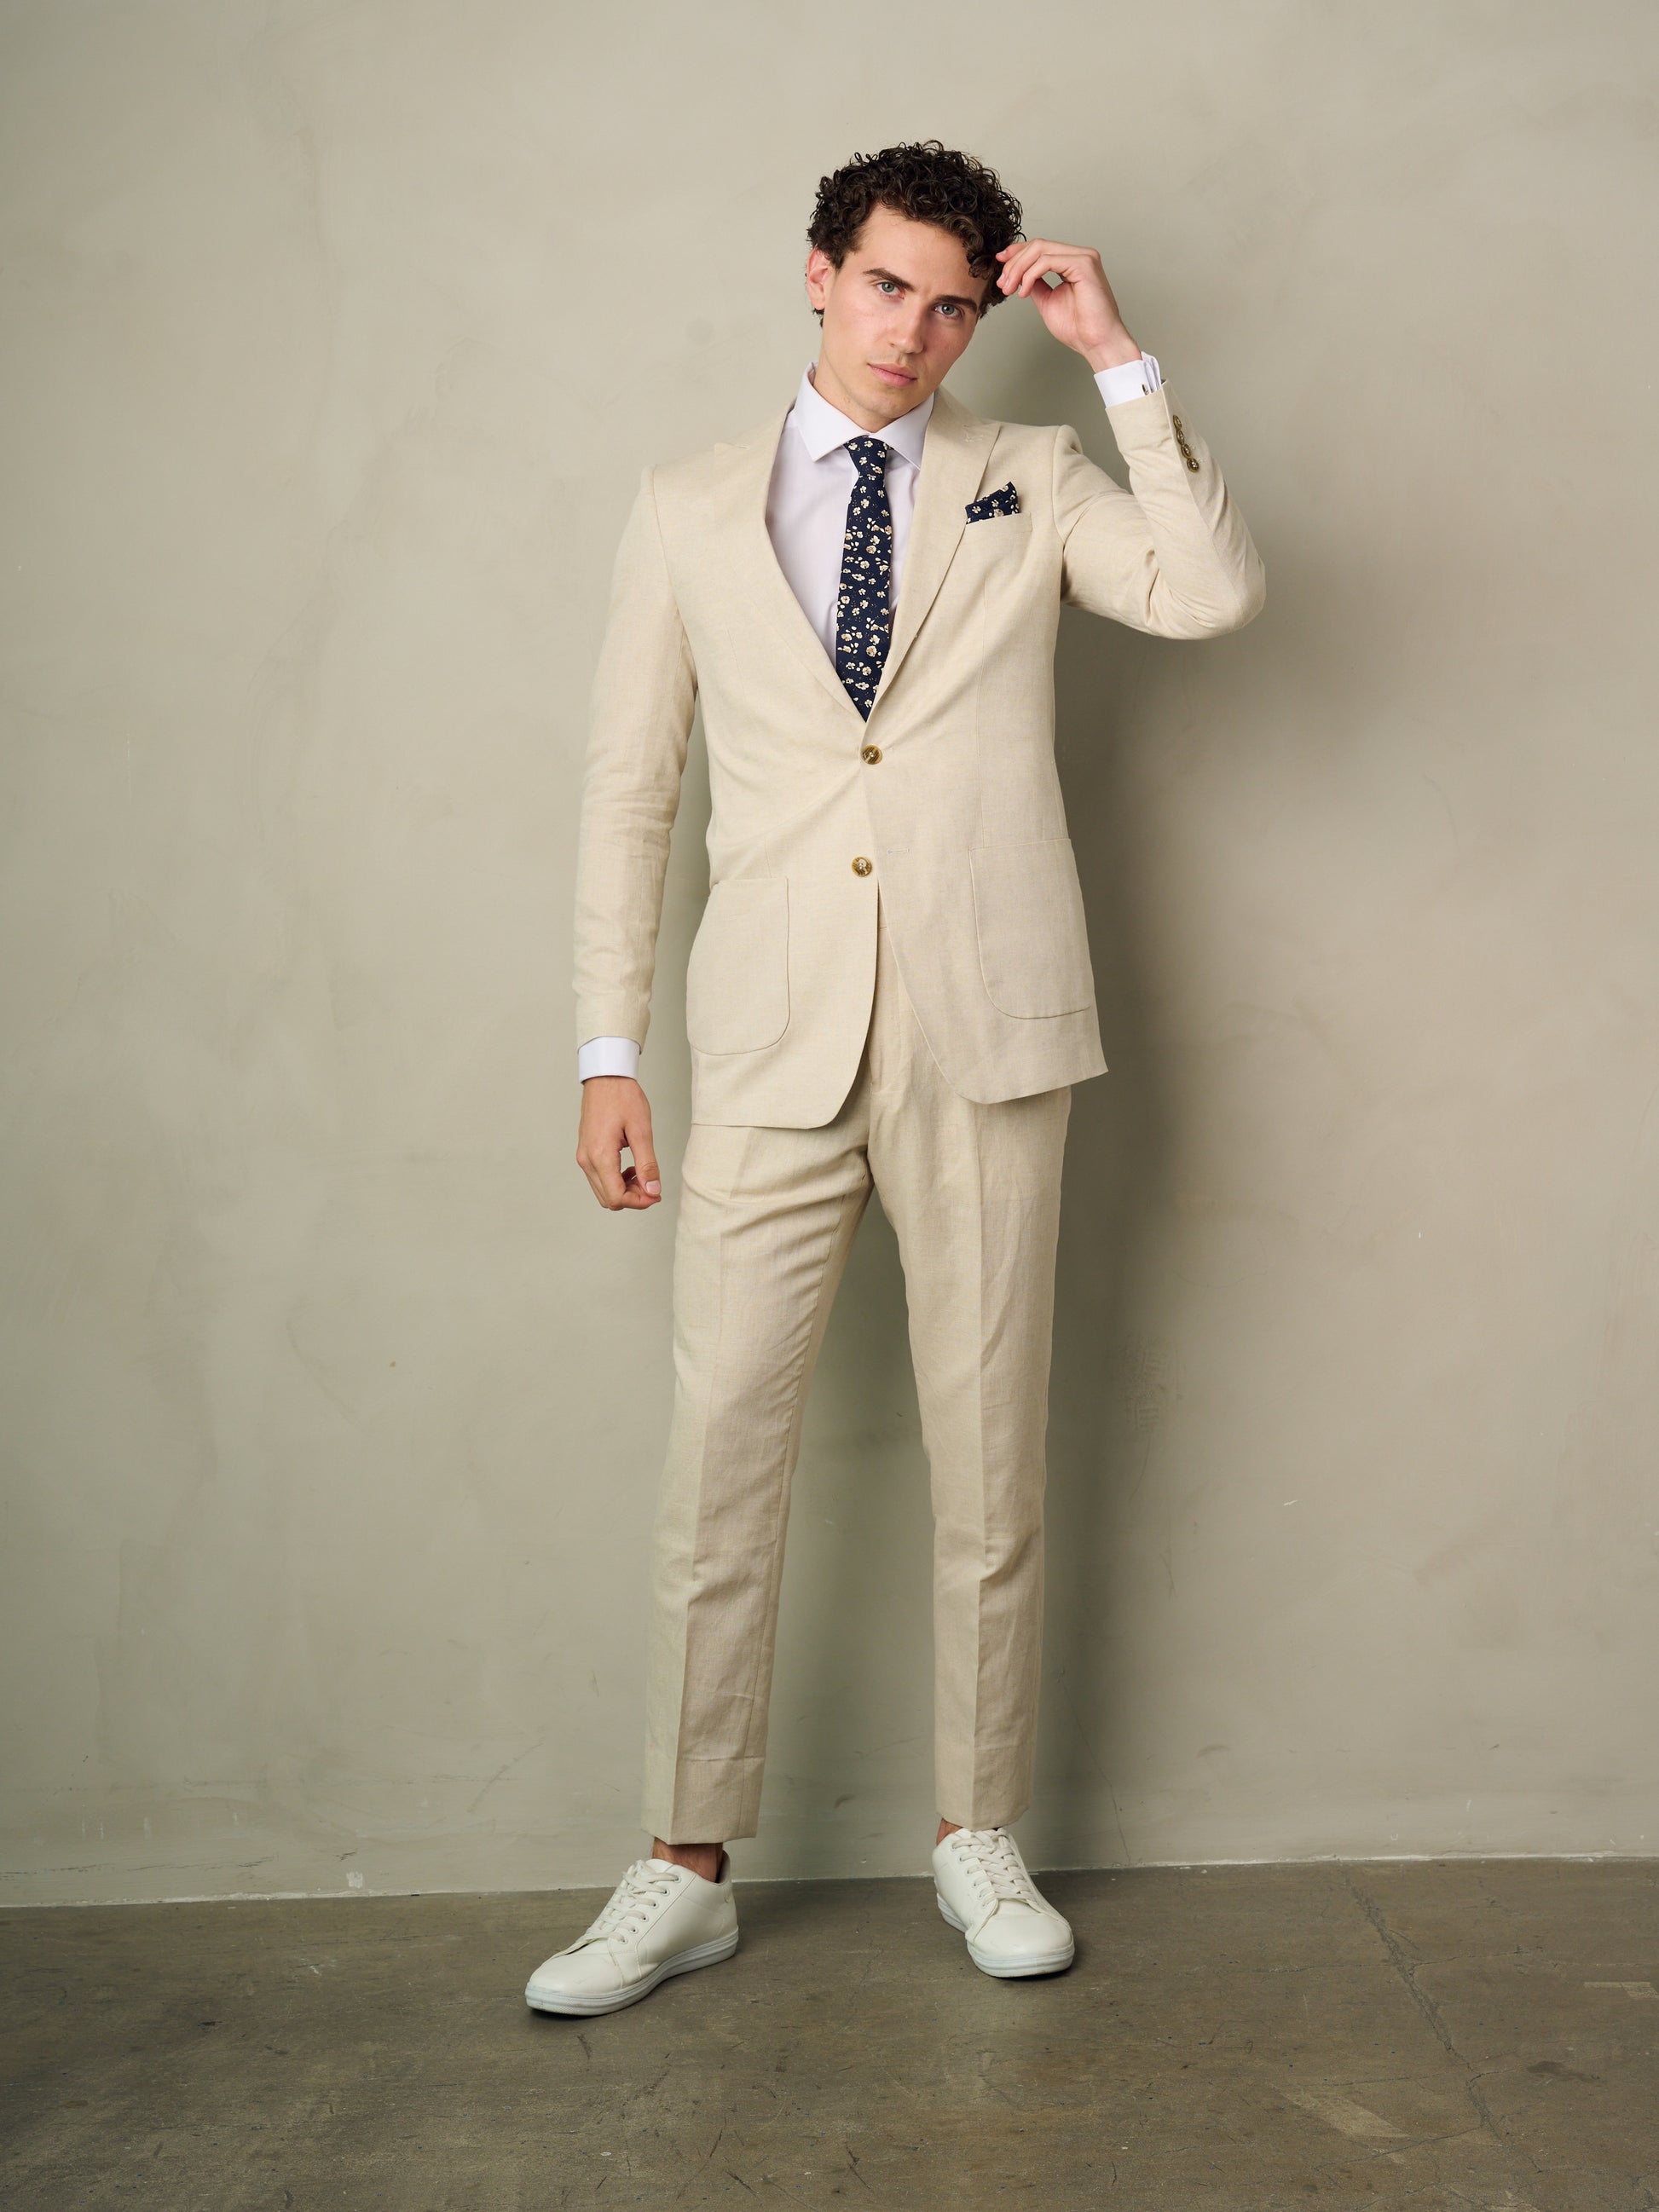 Men's 2-Pieces Slim Fit Linen Suit (Tan) – OMC Formal